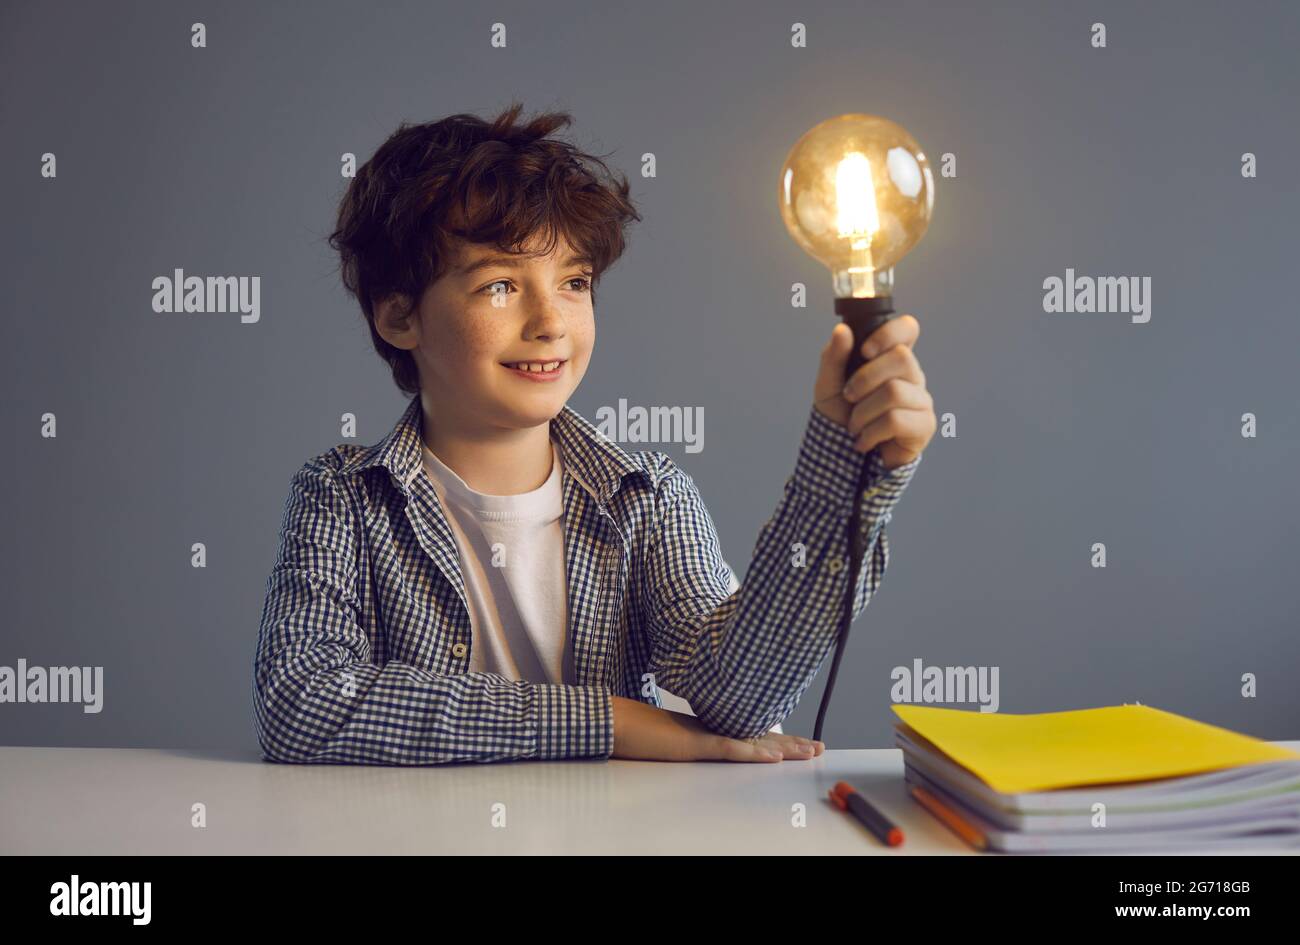 Un jeune garçon intelligent assis sur un bureau tenant une ampoule lumineuse portrait de studio Banque D'Images